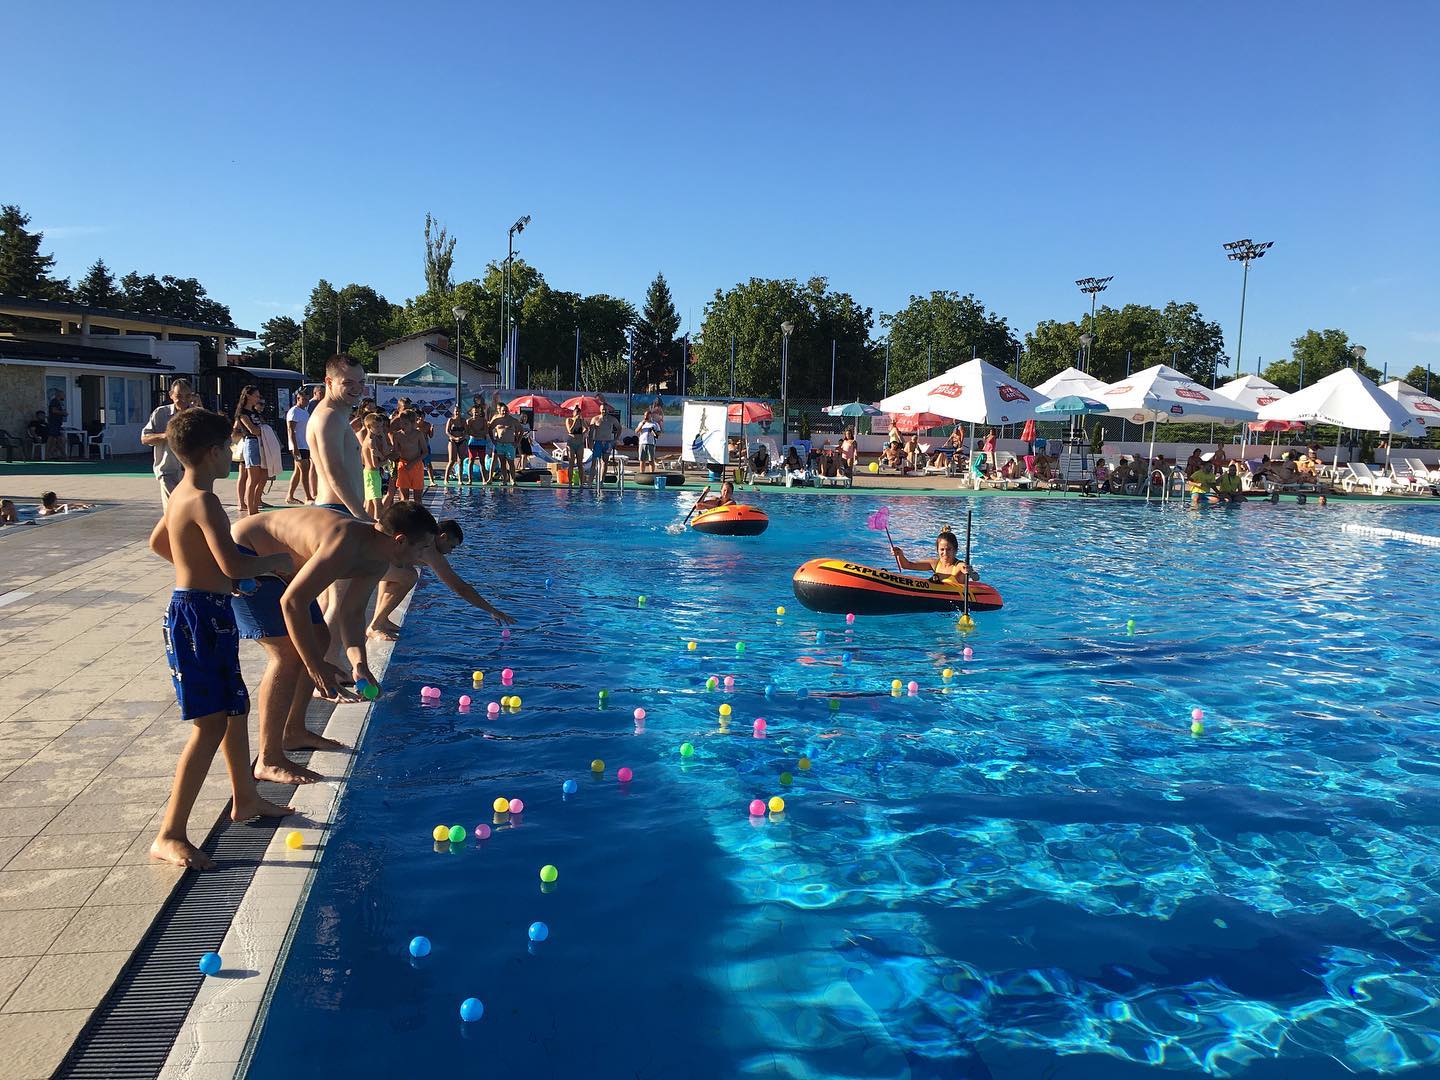 Igre na vodi ove subote na bazenima “Slavija” u Ćupriji